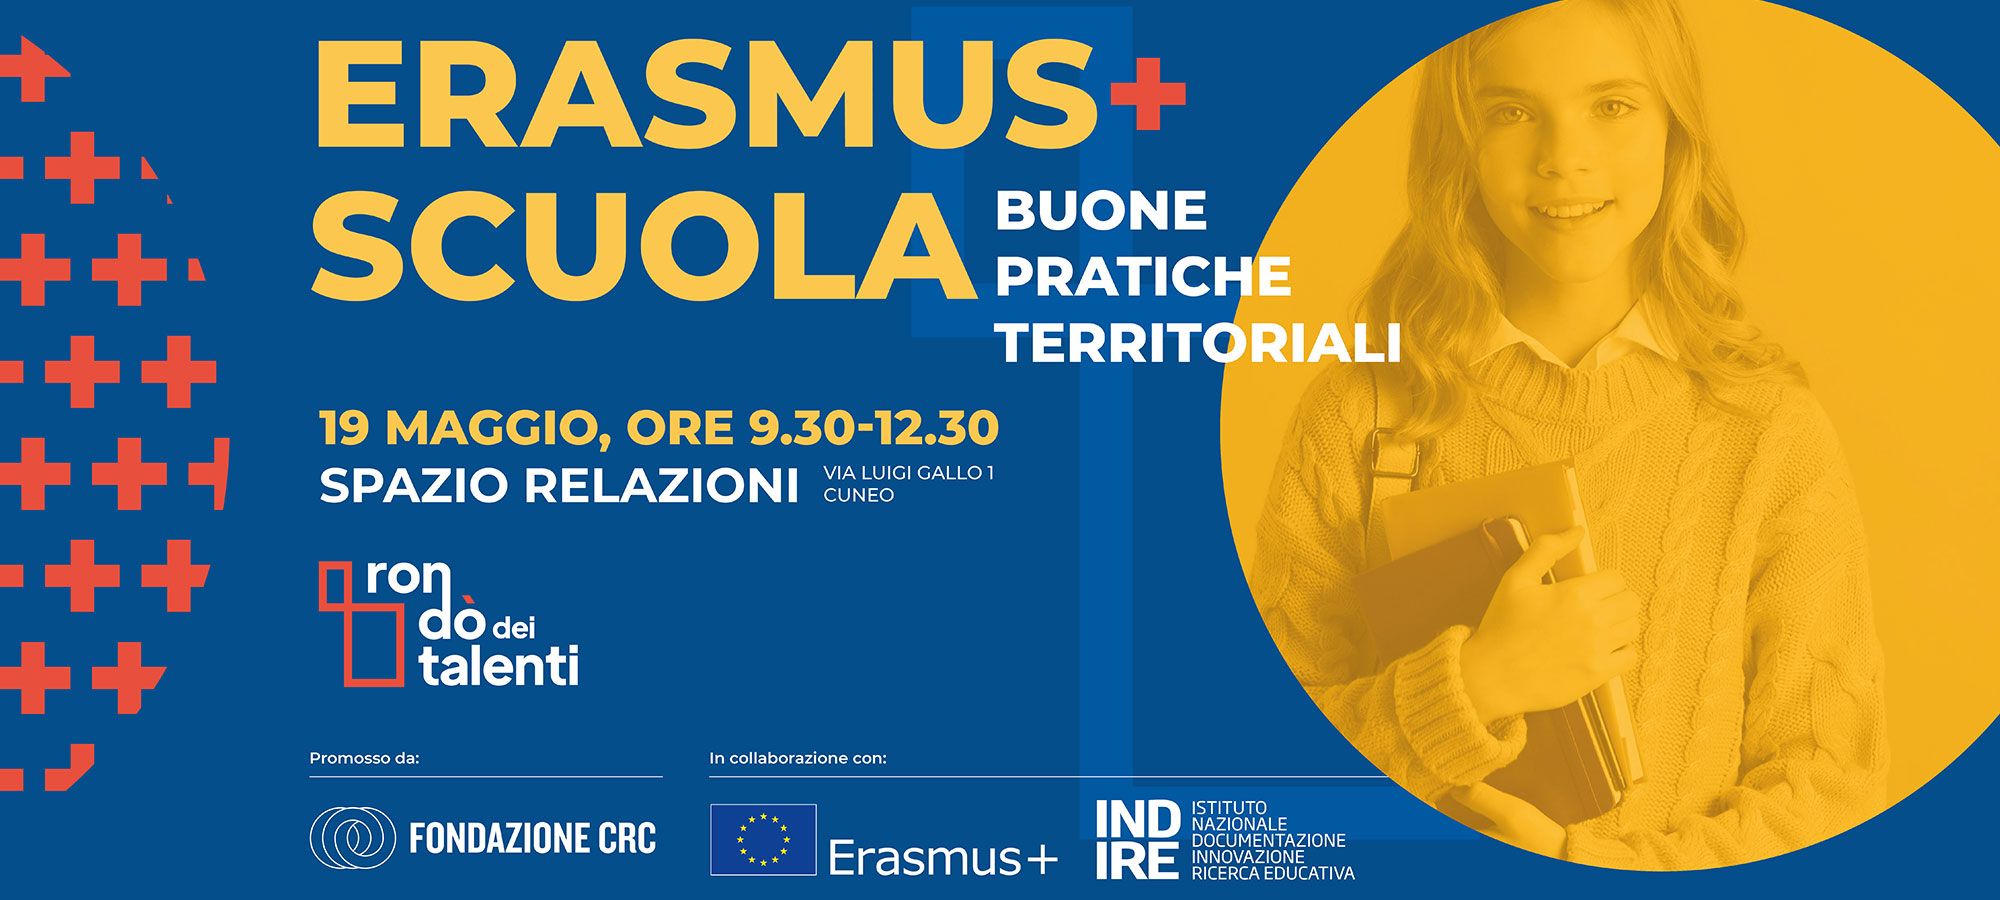 ERASMUS+ SCUOLA: Buone pratiche territoriali